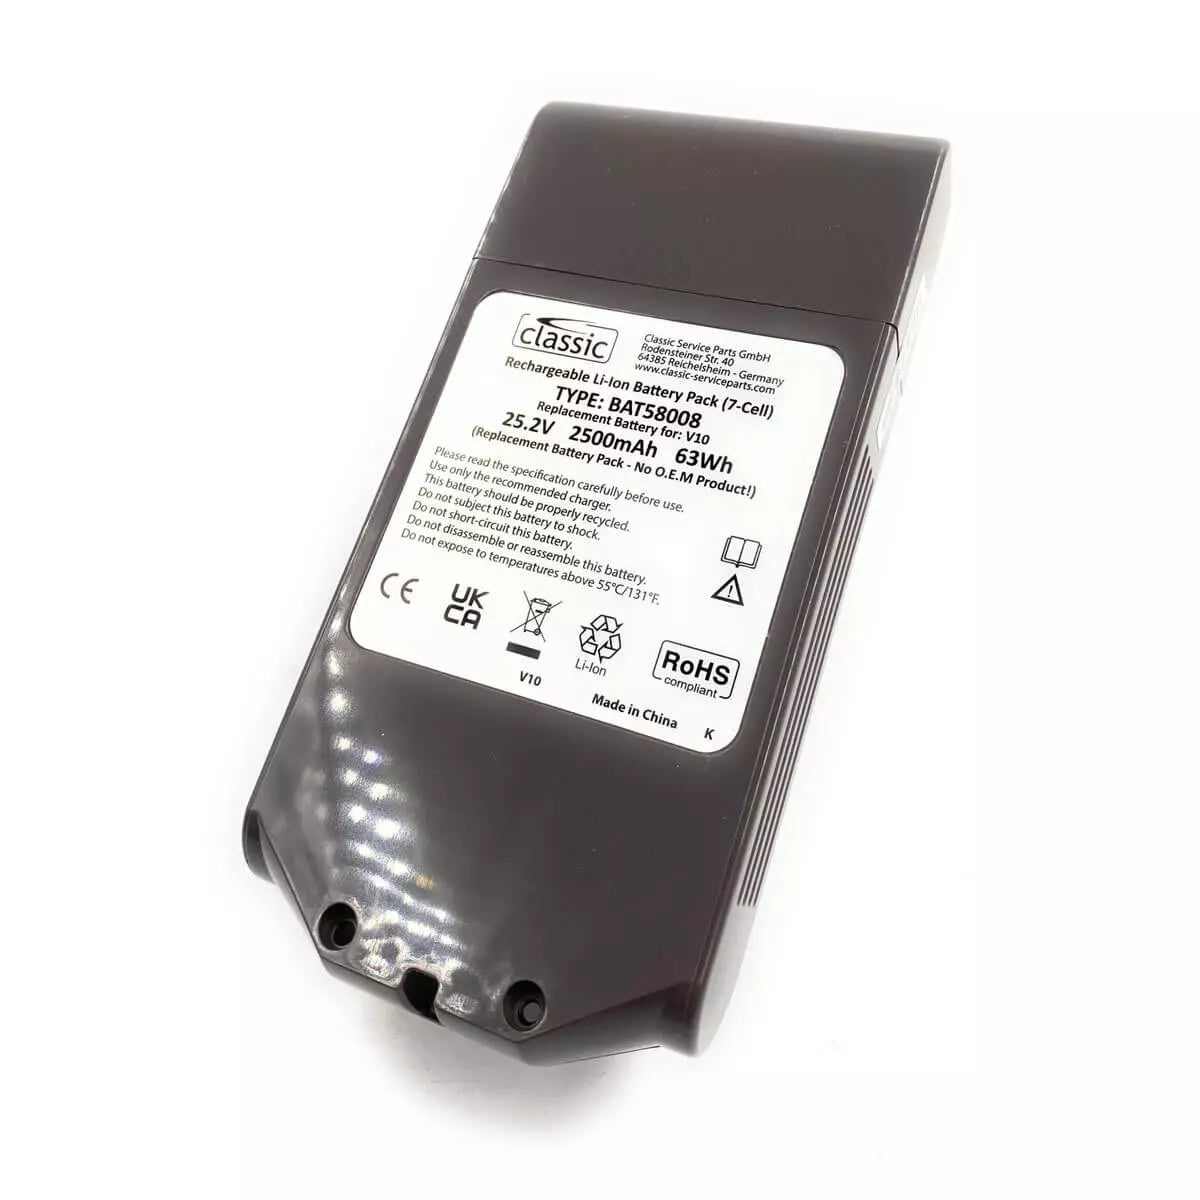 Batterie remplace Dyson SV12, 969352-07, 969352-02, 206340 pour aspirateur  - 2500mAh 25,2V Li-ion